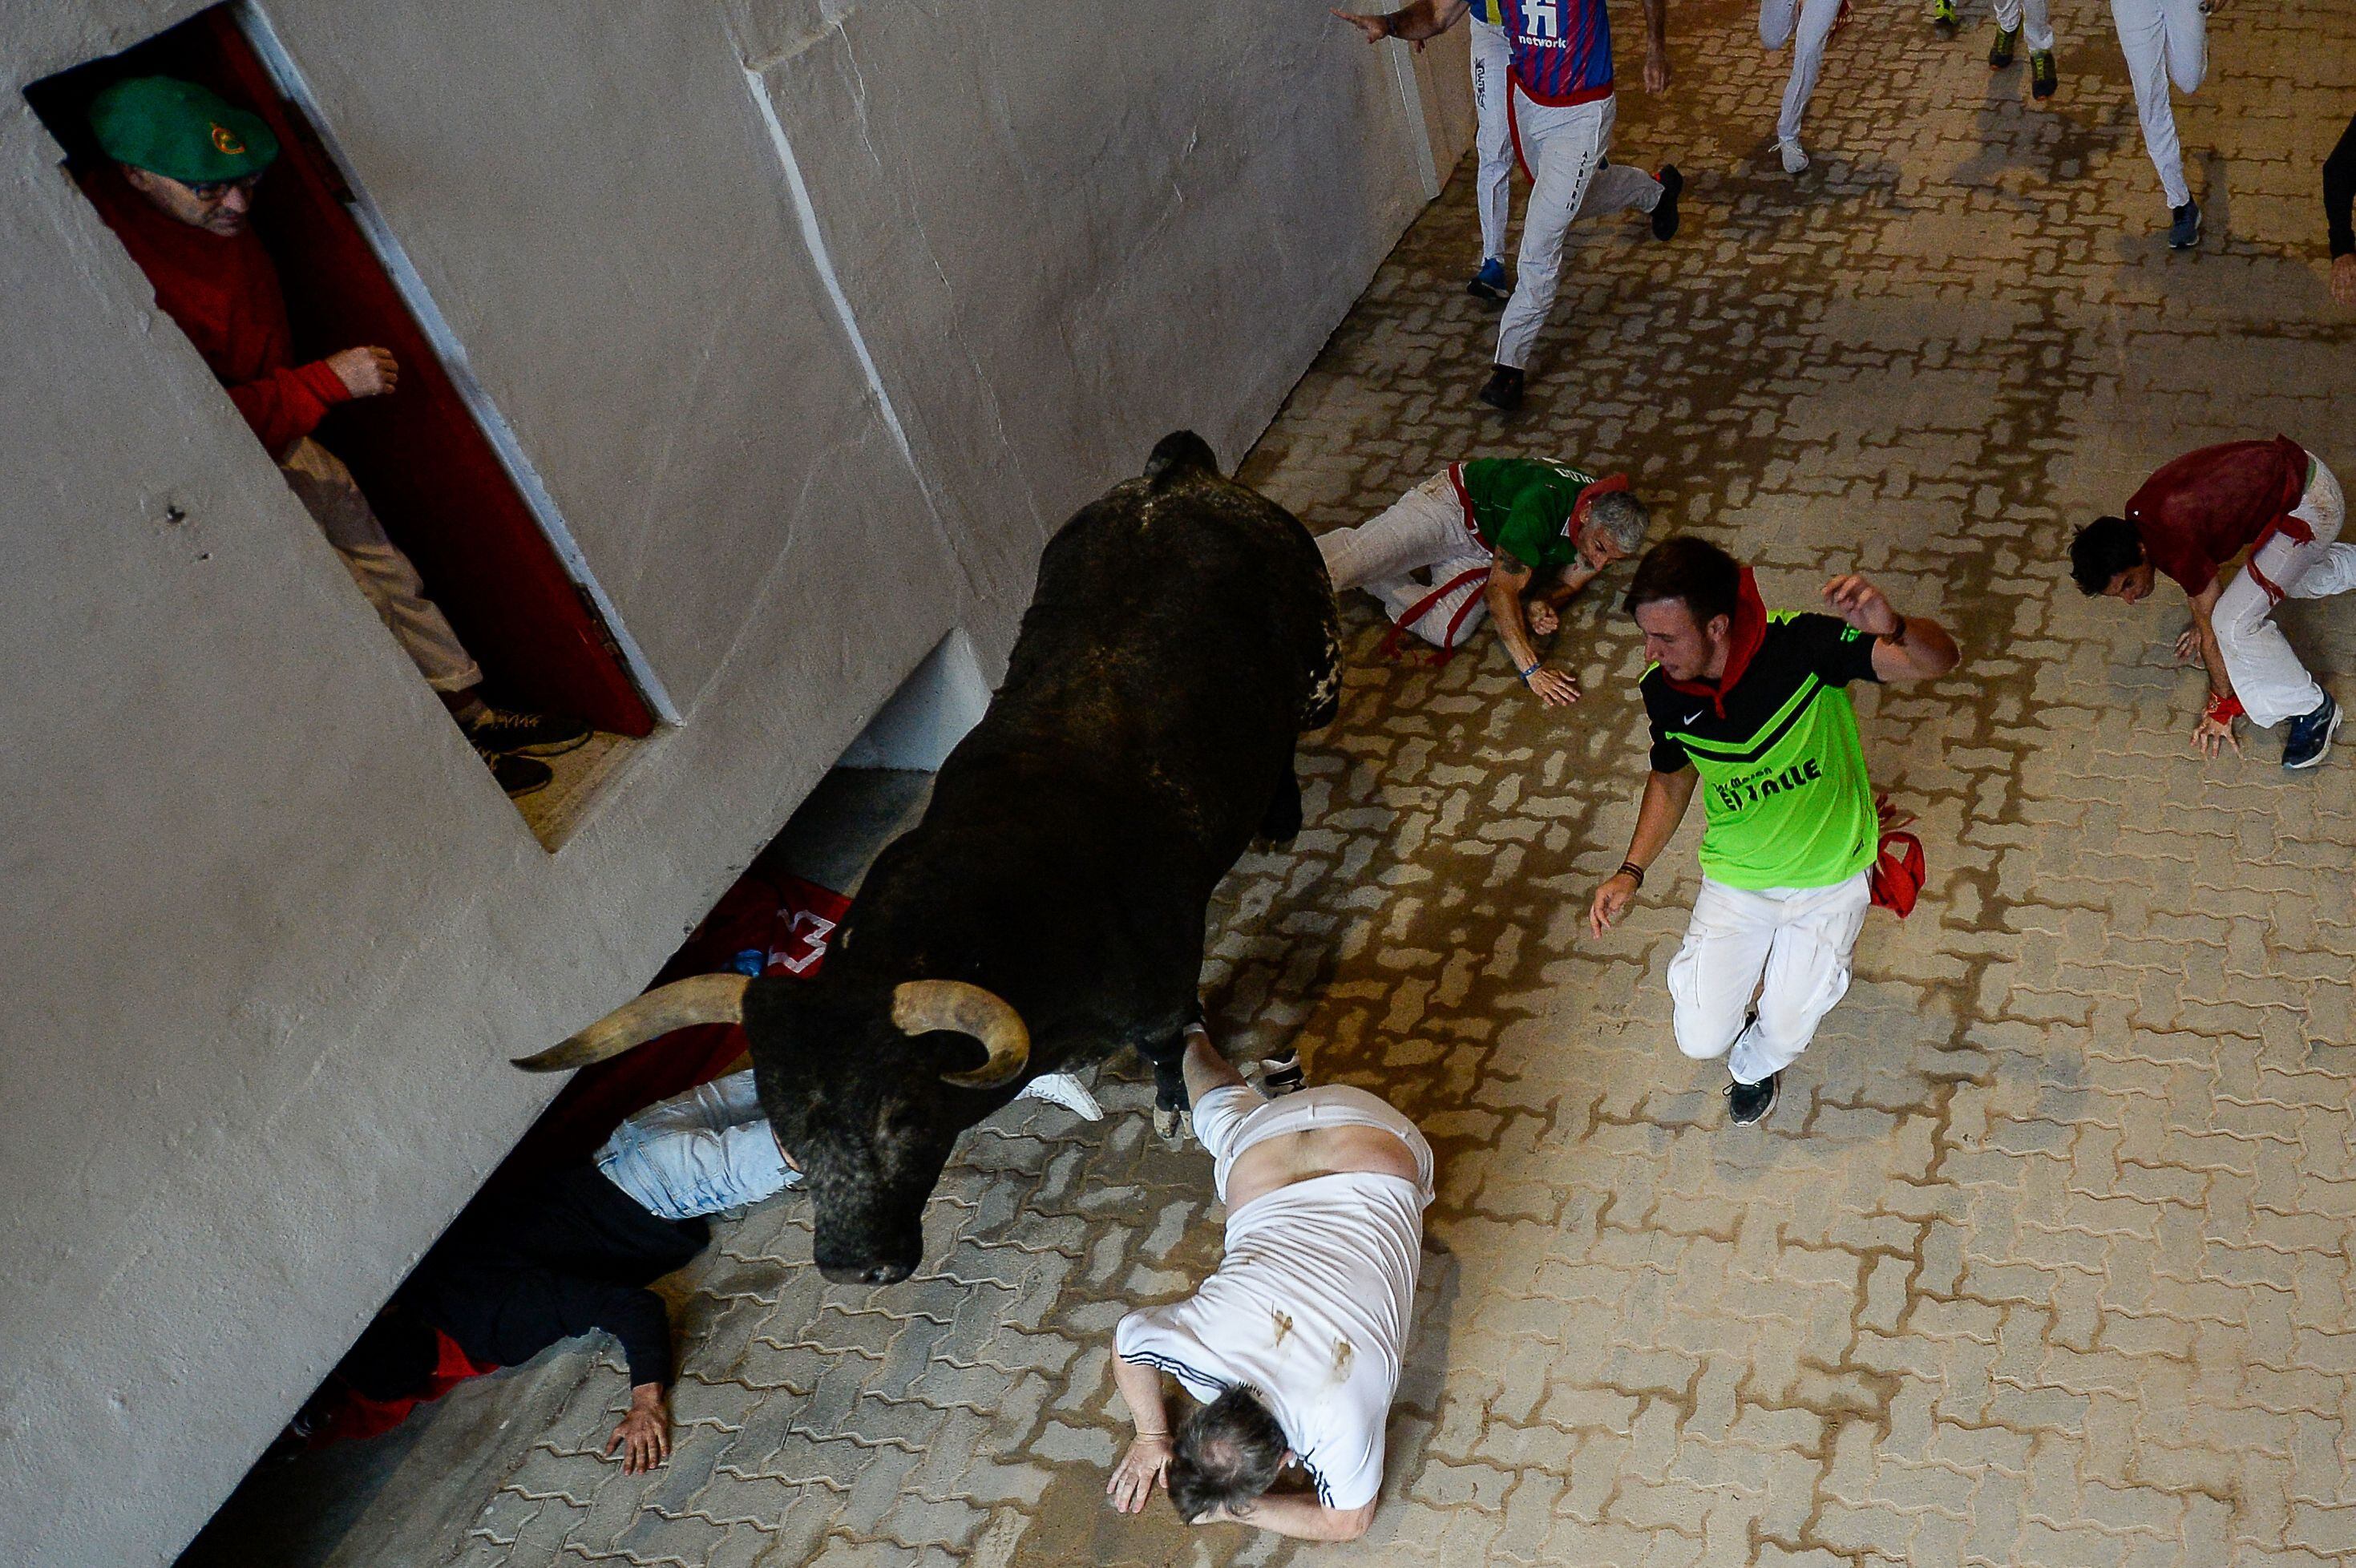 Varios corredores se tiran al suelo al paso de uno de los astados, por el callejón de la plaza de toros de Pamplona. 